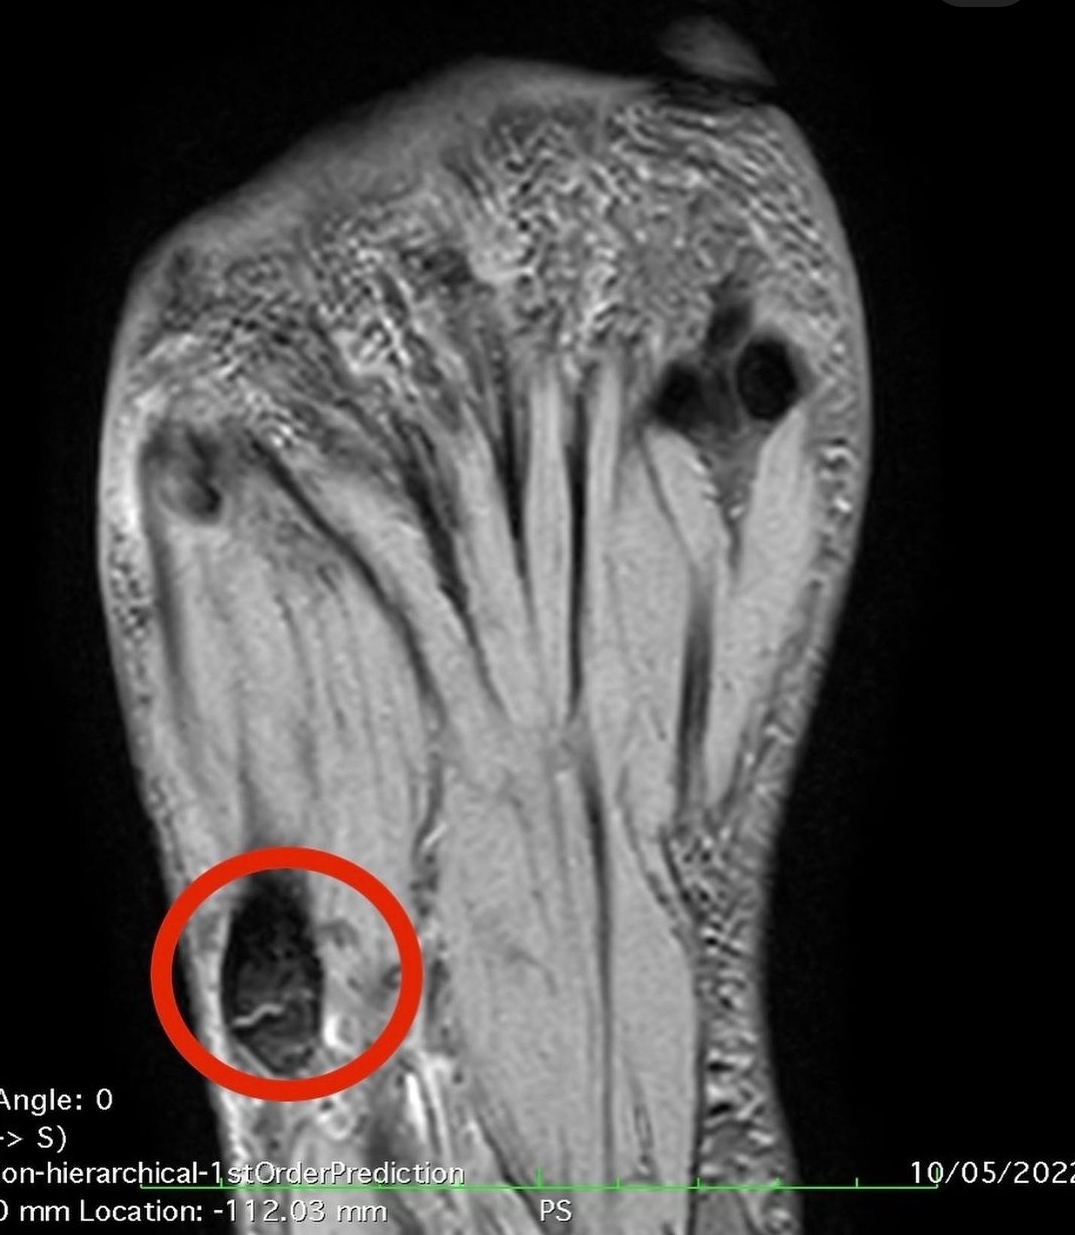 Imagen radiolgica donde se aprecia la fractura sufrida por el nadador